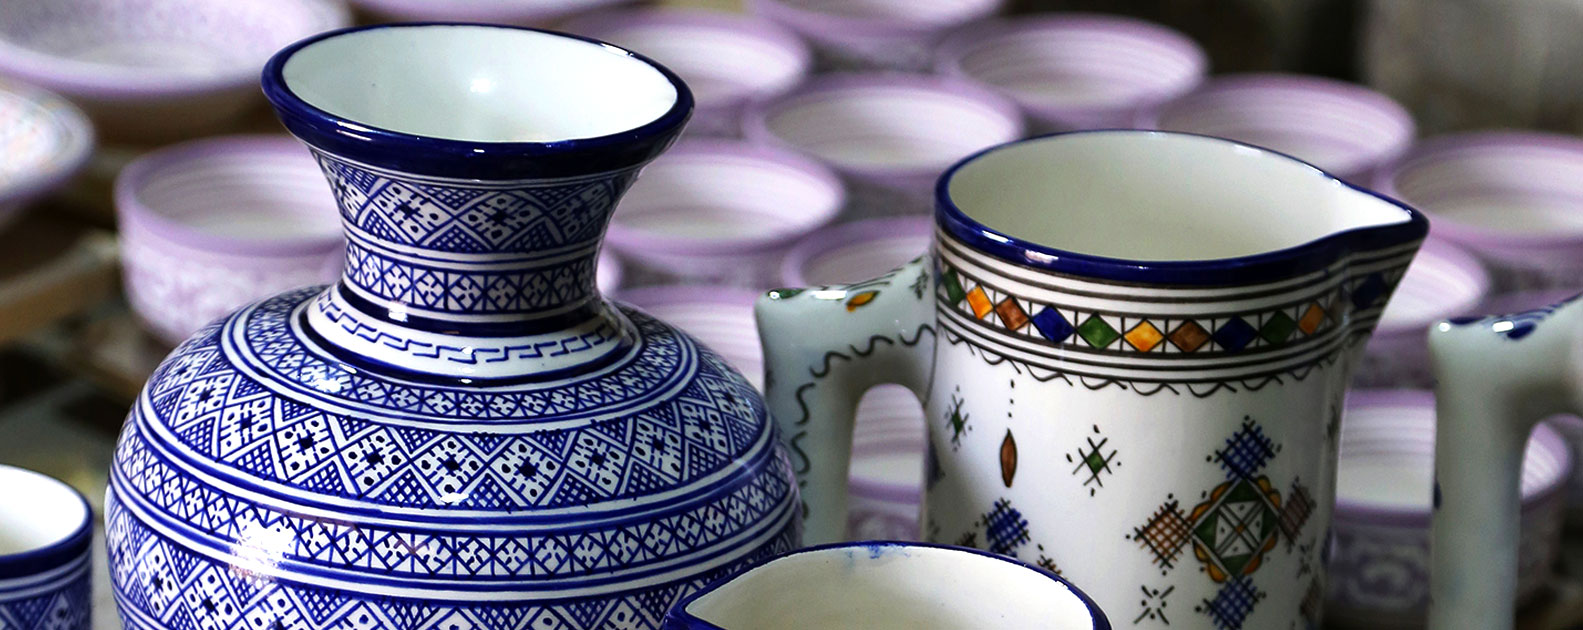 A Medina de Meknes, onde o artesanato tradicional e a modernidade andam de mãos dadas.